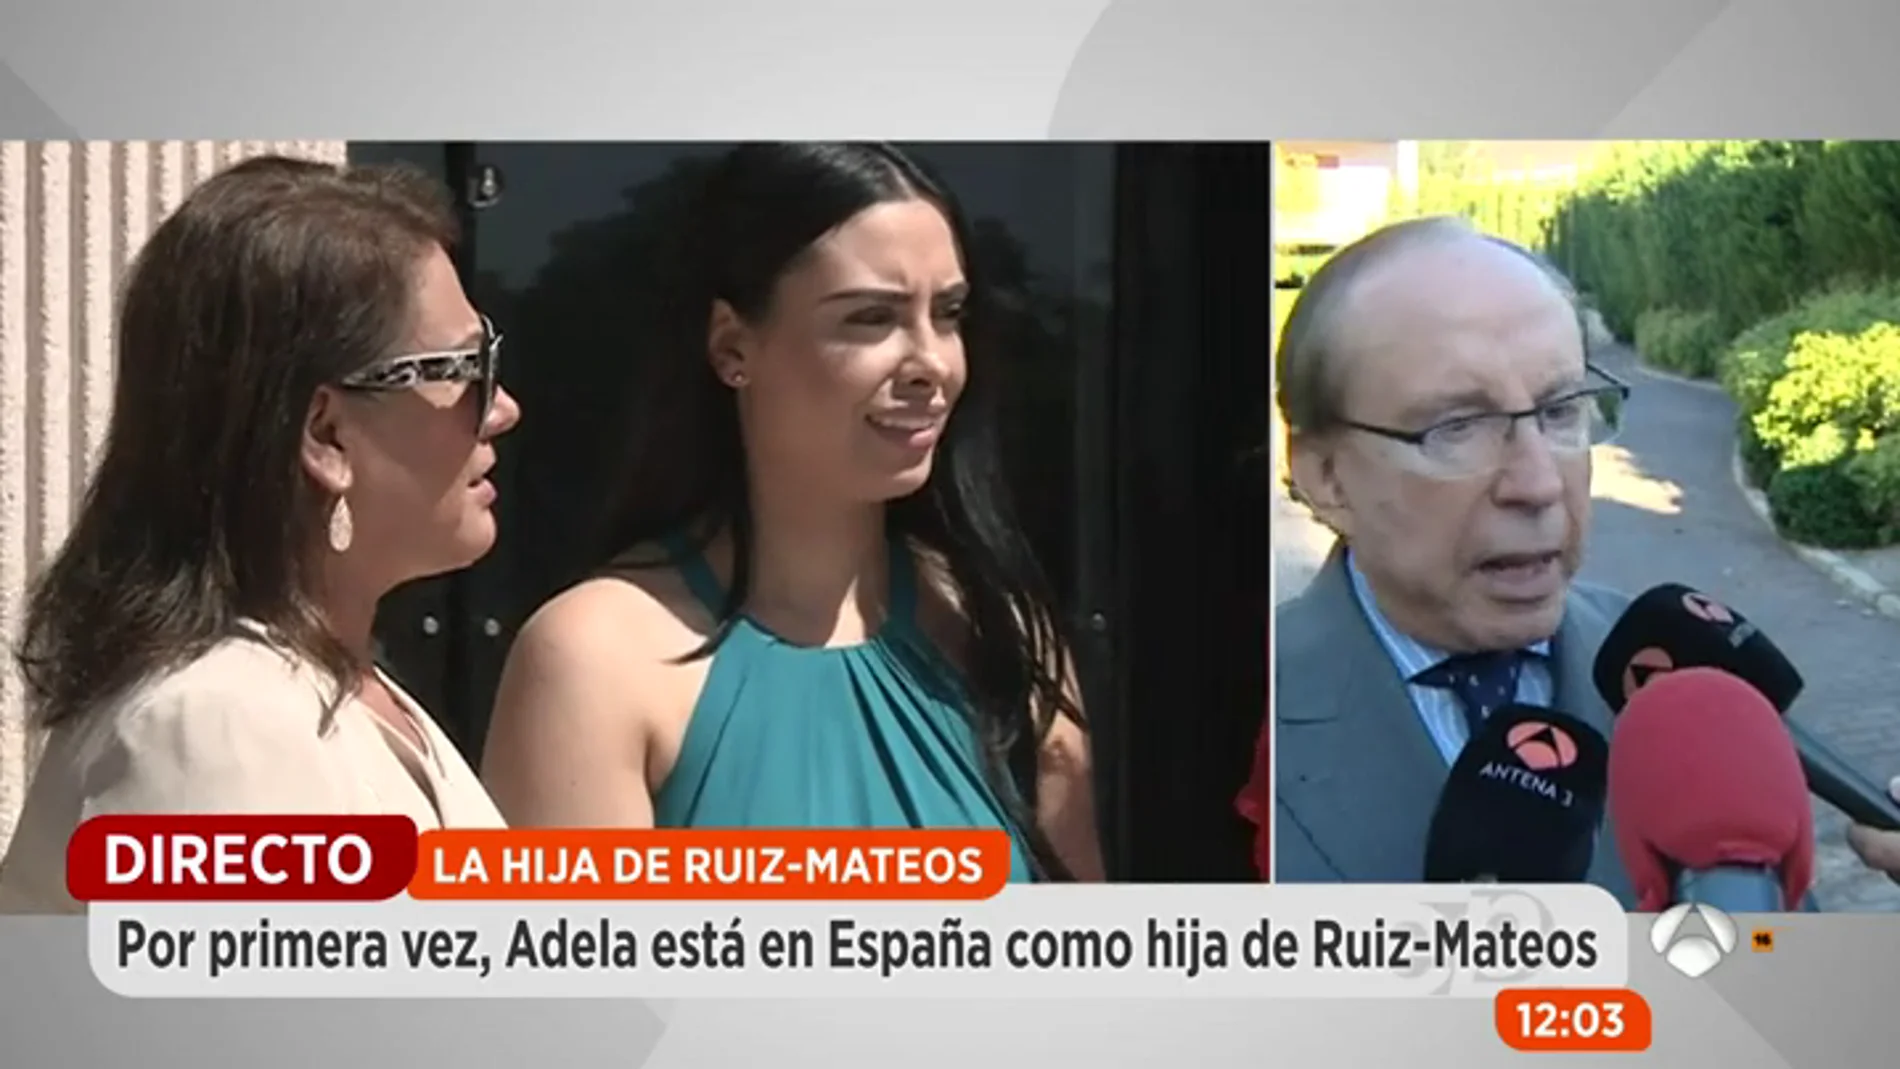 Frame 71.434673 de: Adela Montes de Oca decide adoptar el apellido de su padre Ruiz-Mateos